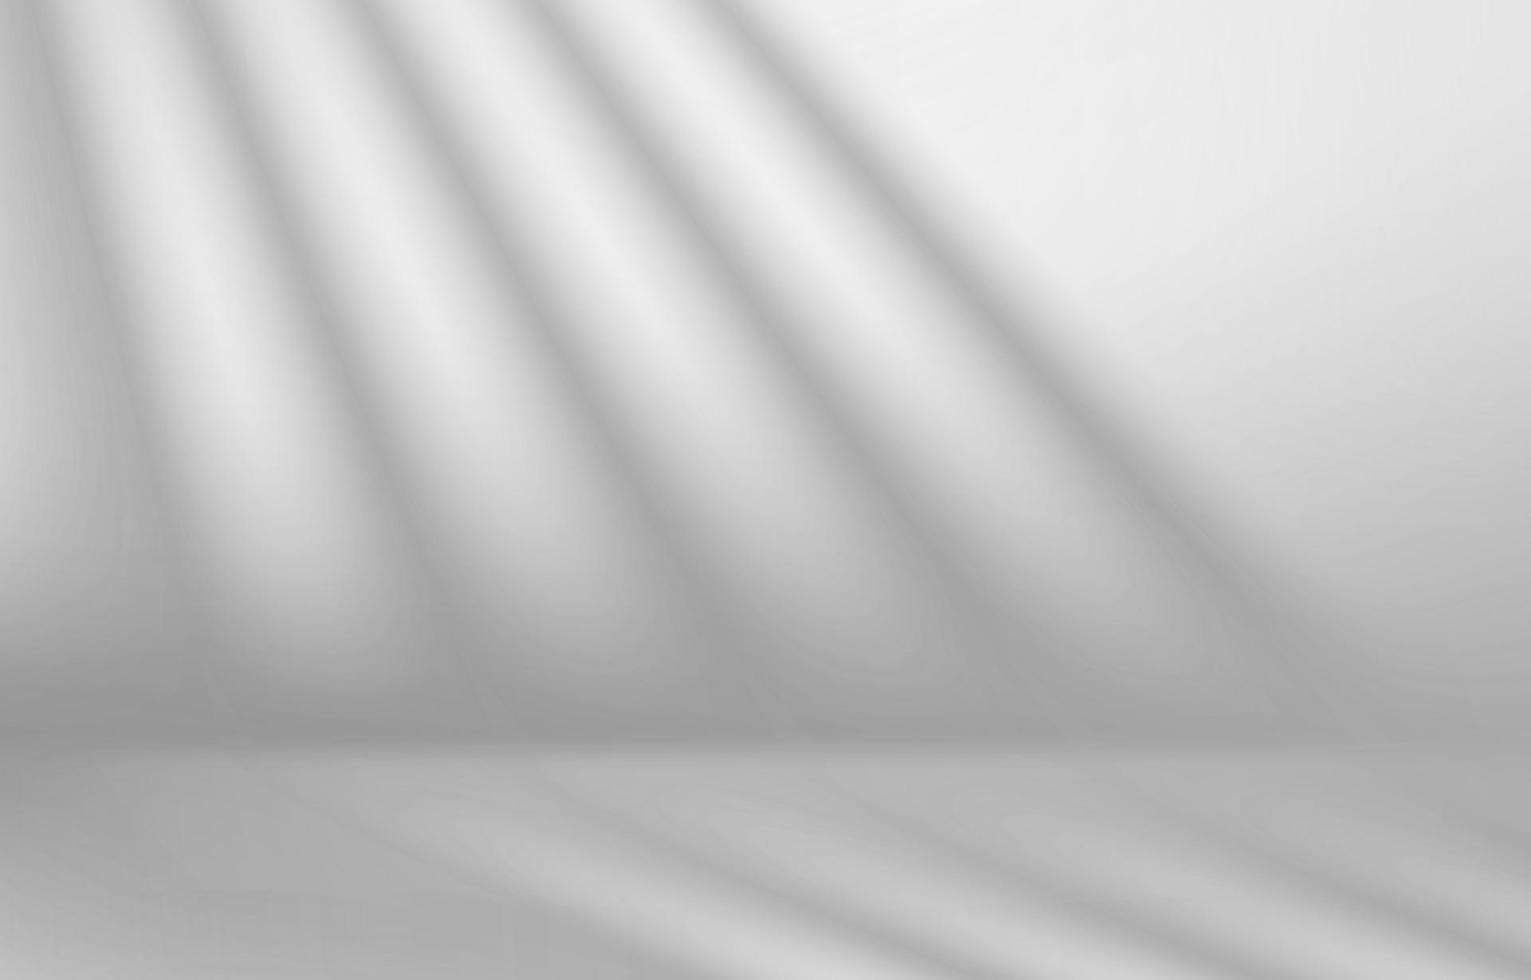 sala blanca con sombras en la pared. Ilustración de vector 3d realista con efecto de superposición de sombras